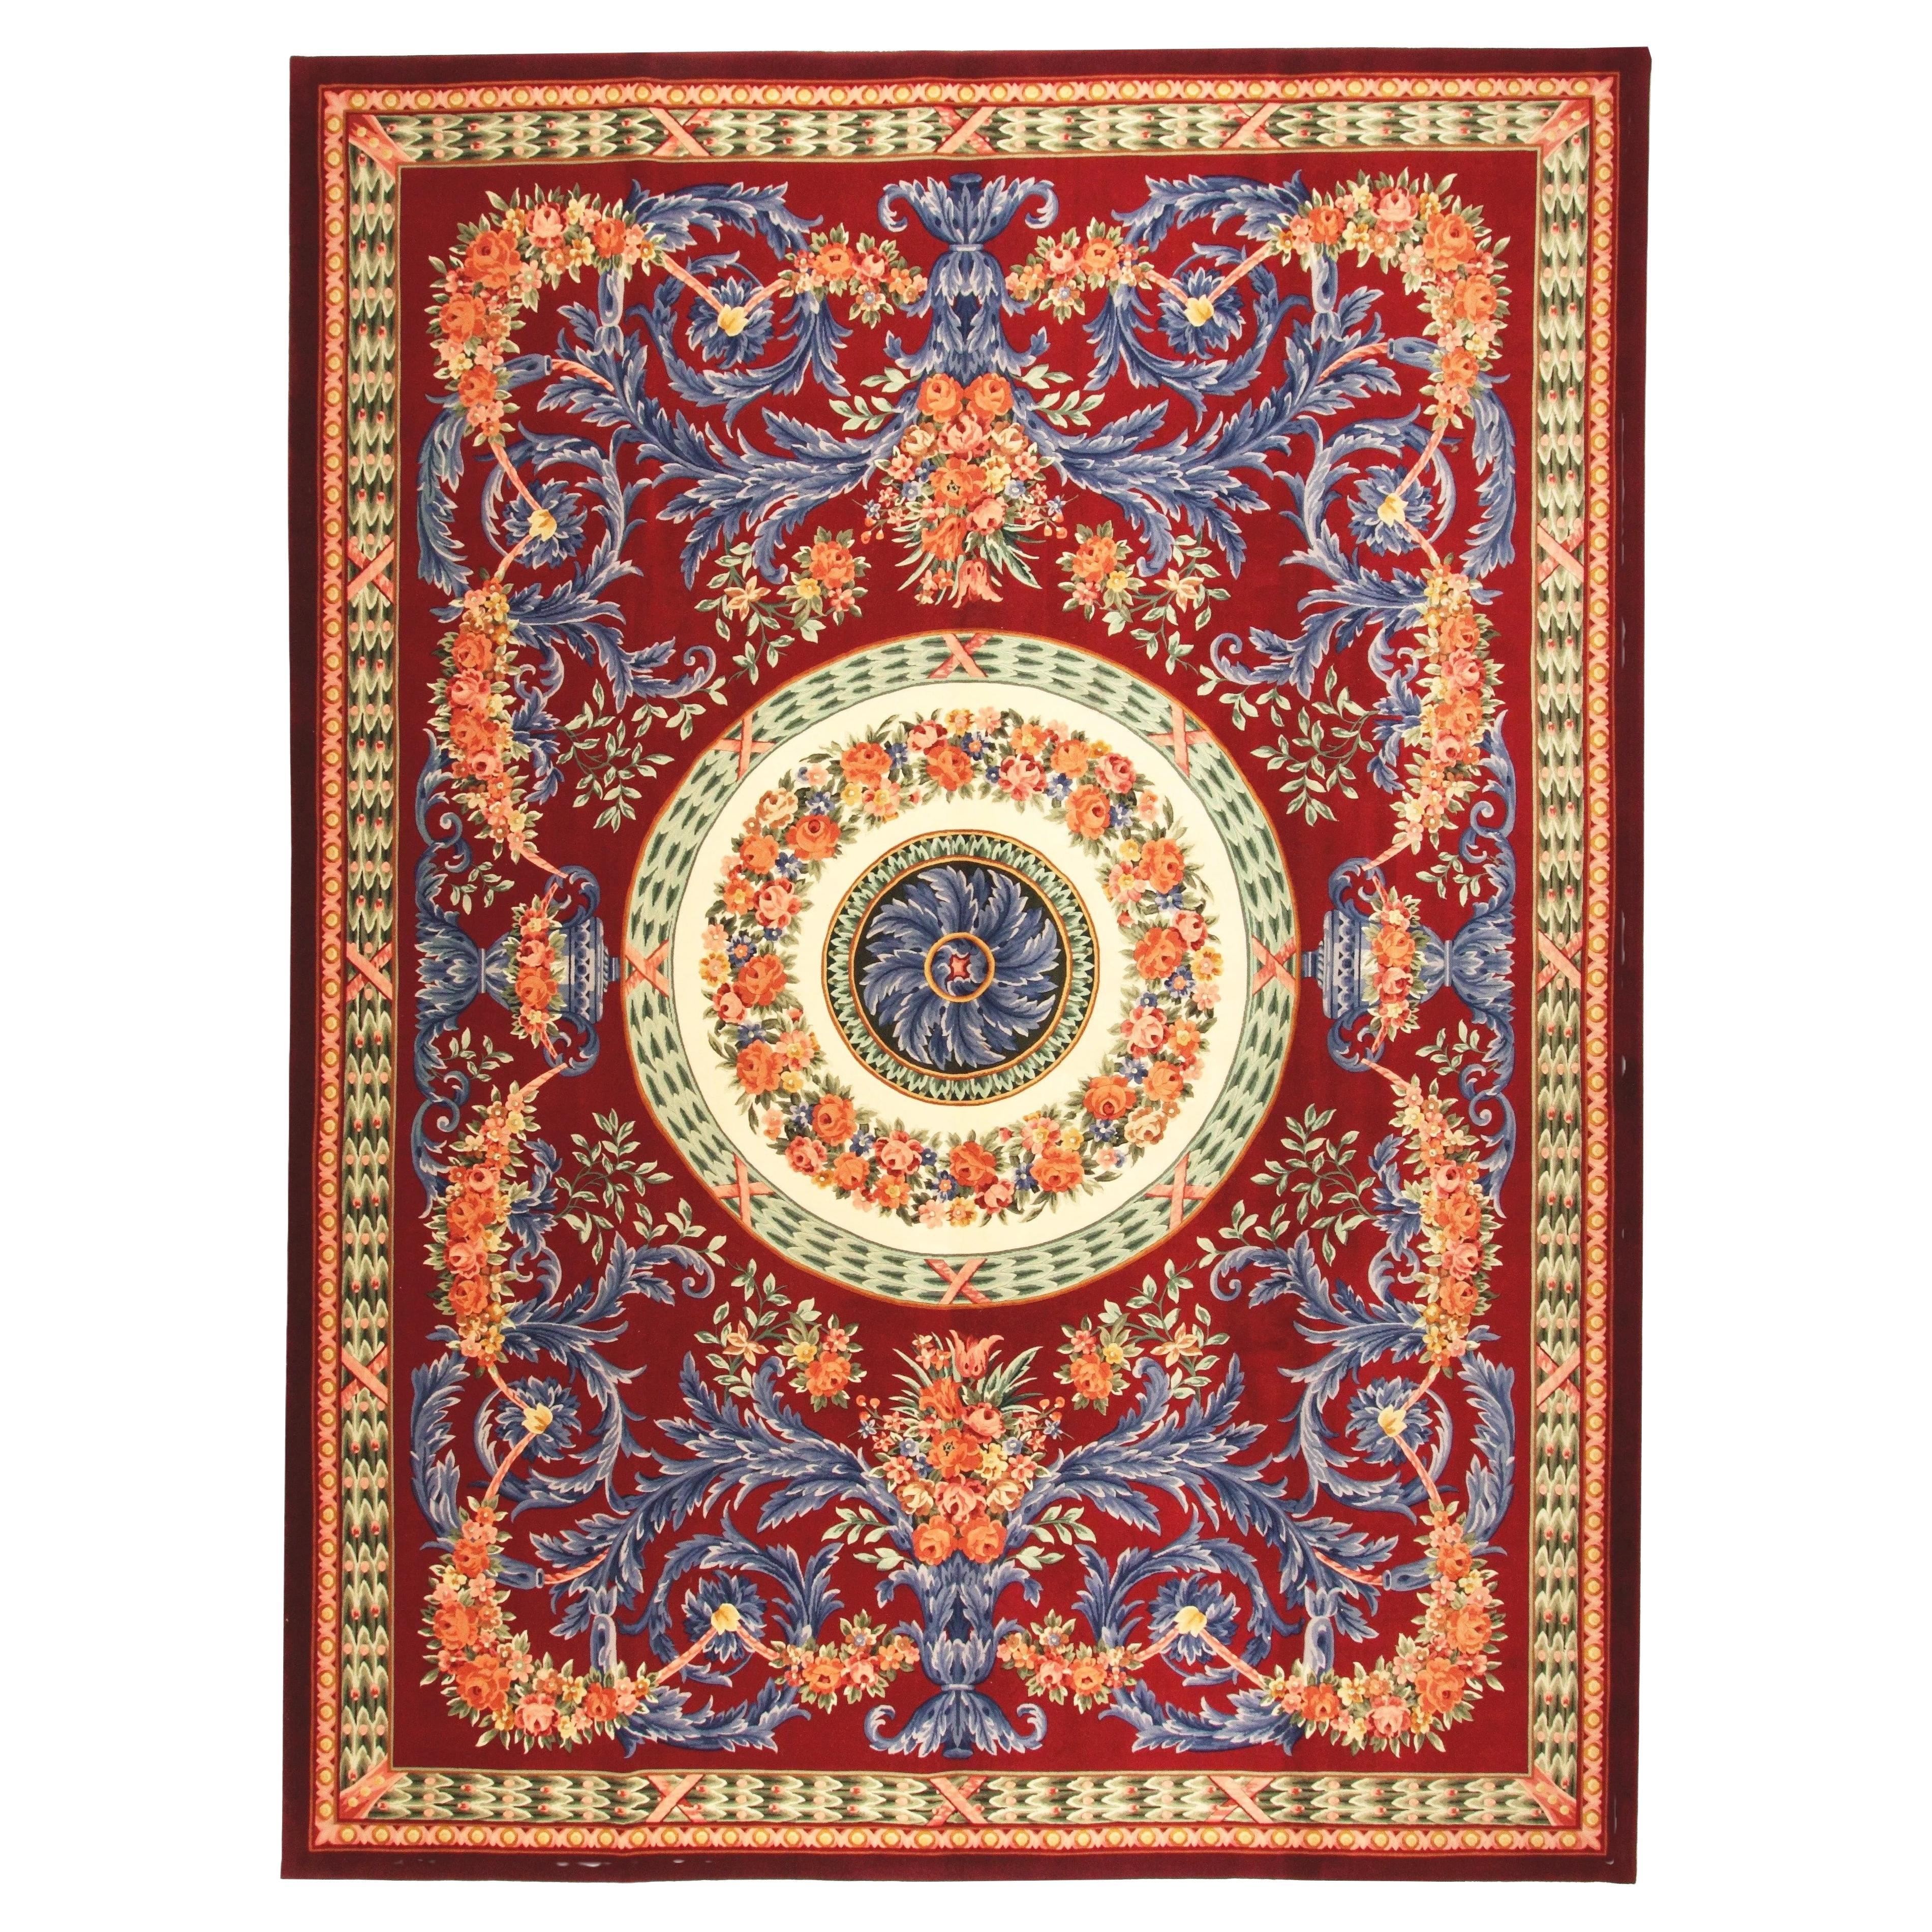 VIA COMO 'Venetian Rosso' Handgeknüpfter Teppich aus Wolle und Seide, selten, 10x13, Barock